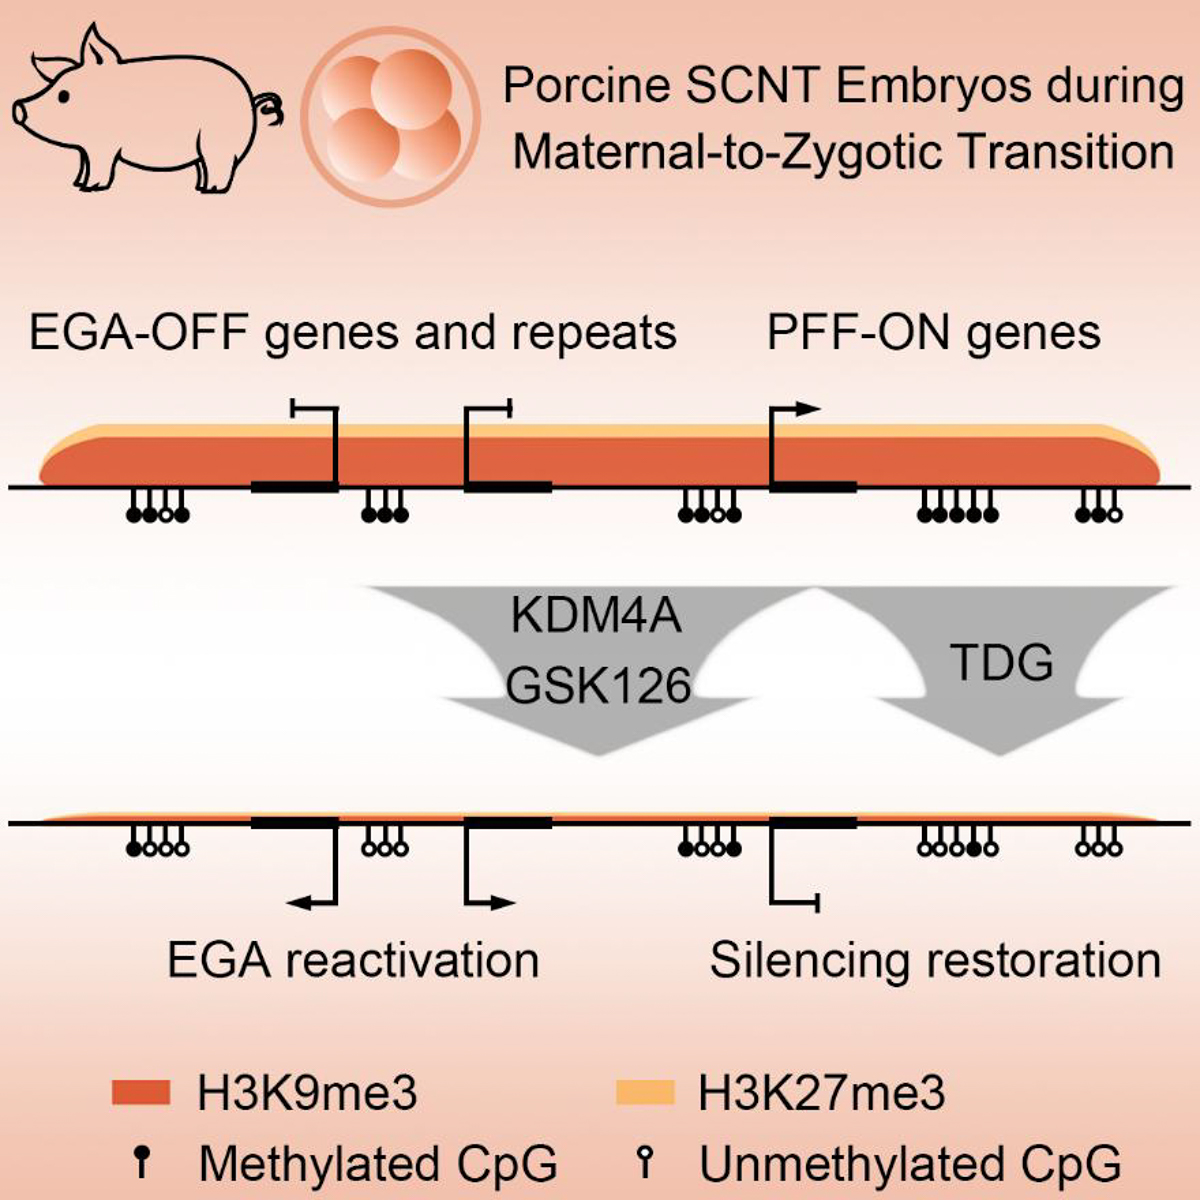 猪克隆胚胎在合子基因组激活阶段的重编程障碍和克服途径